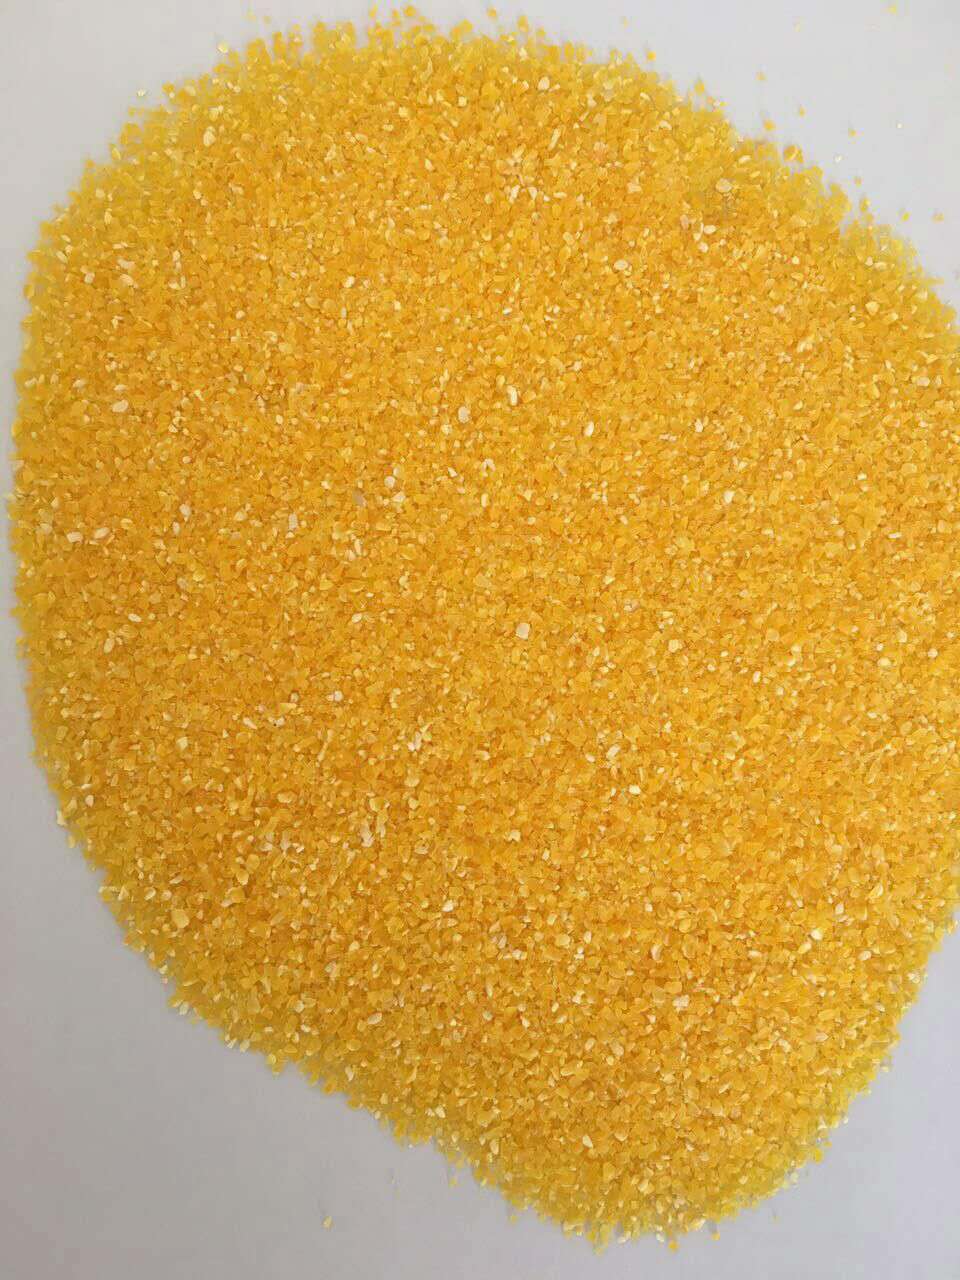 厂家直销膨化食品原料玉米粉玉米糁 厂家直销膨化食品原料玉米面图片